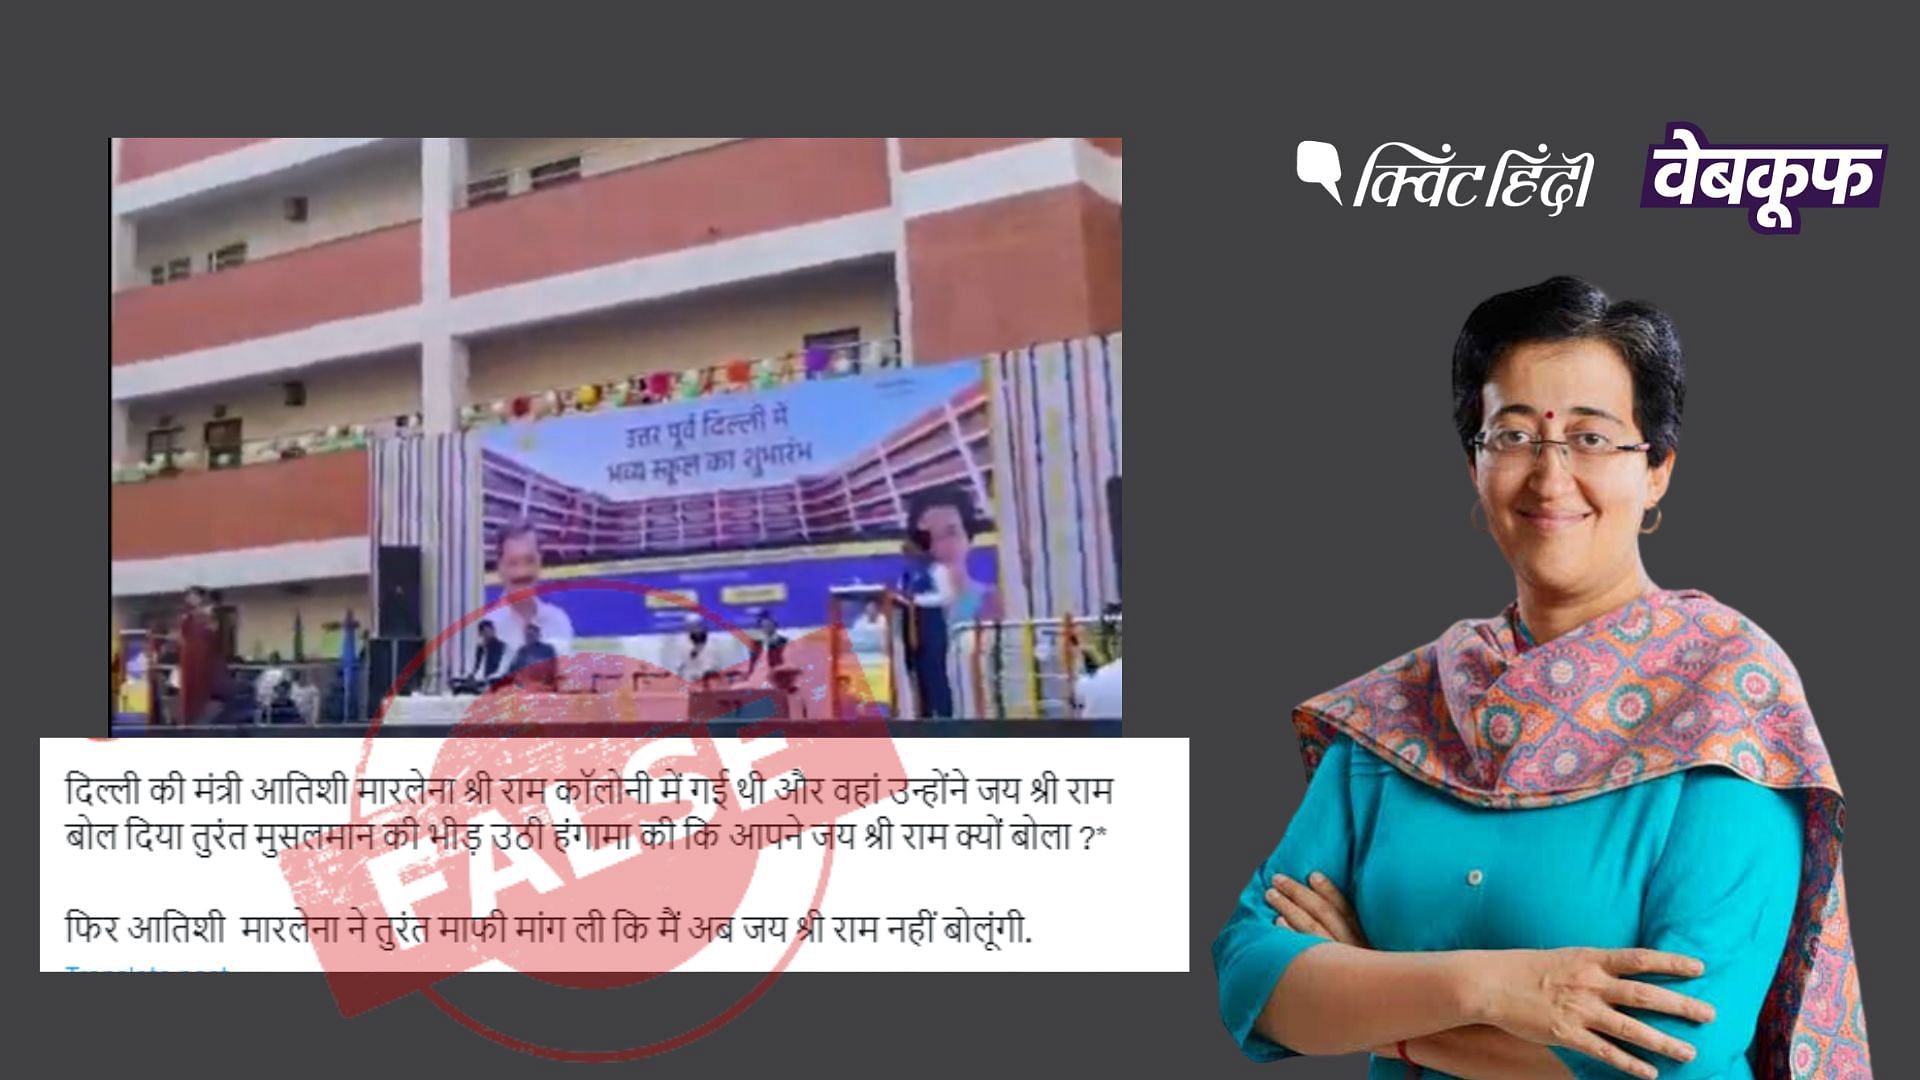 <div class="paragraphs"><p>दिल्ली के स्कूल का उद्घाटन करती आम आदमी पार्टी नेता आतिशी मार्लेना का वीडियो वायरल</p></div>